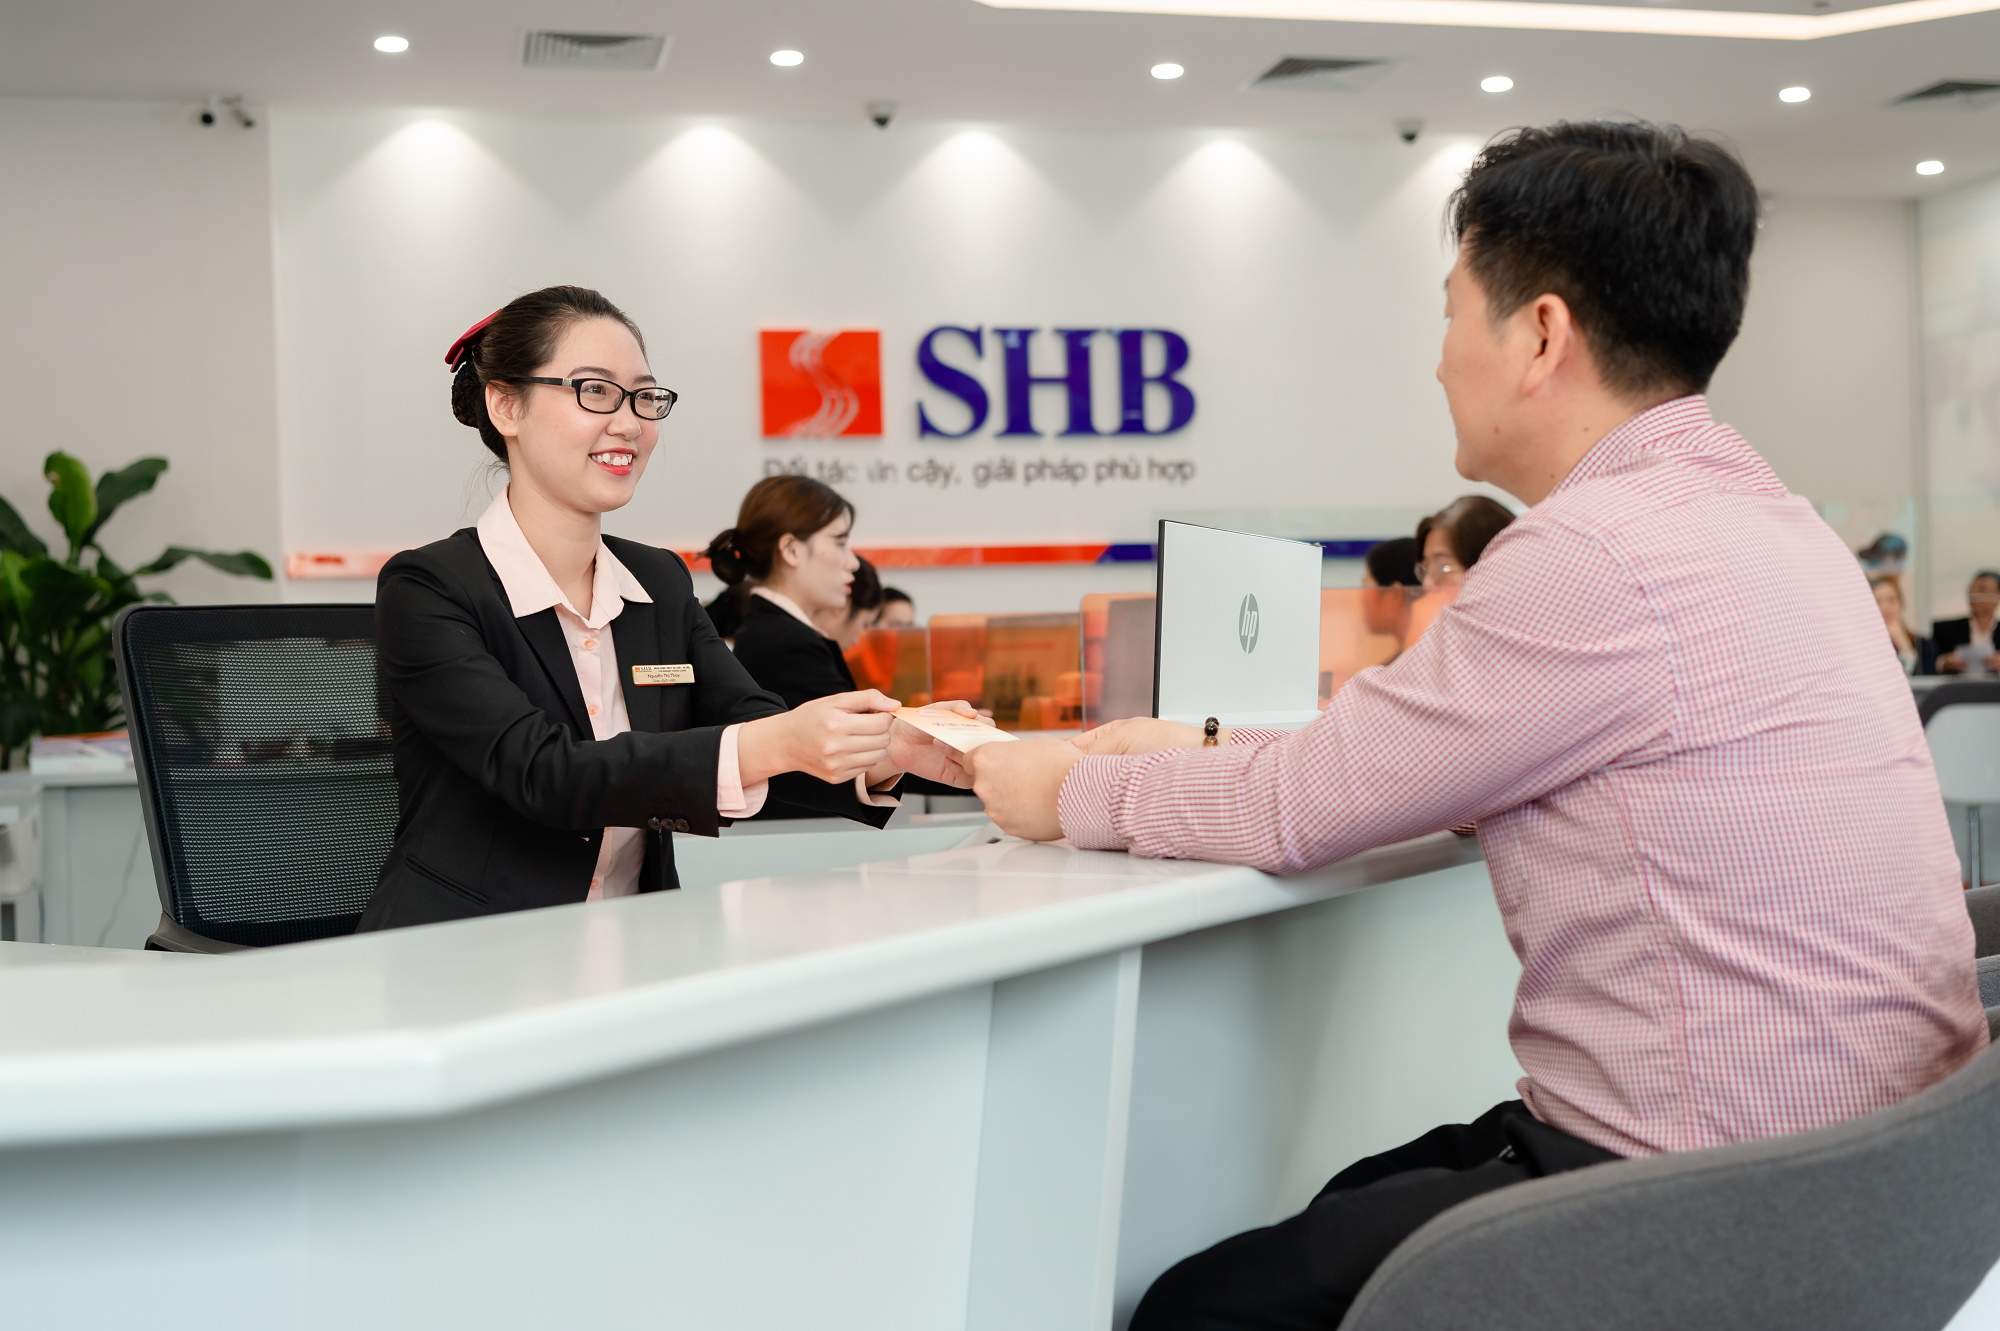 Thời gian giao dịch của ngân hàng SHB là từ thứ Hai đến sáng thứ 7